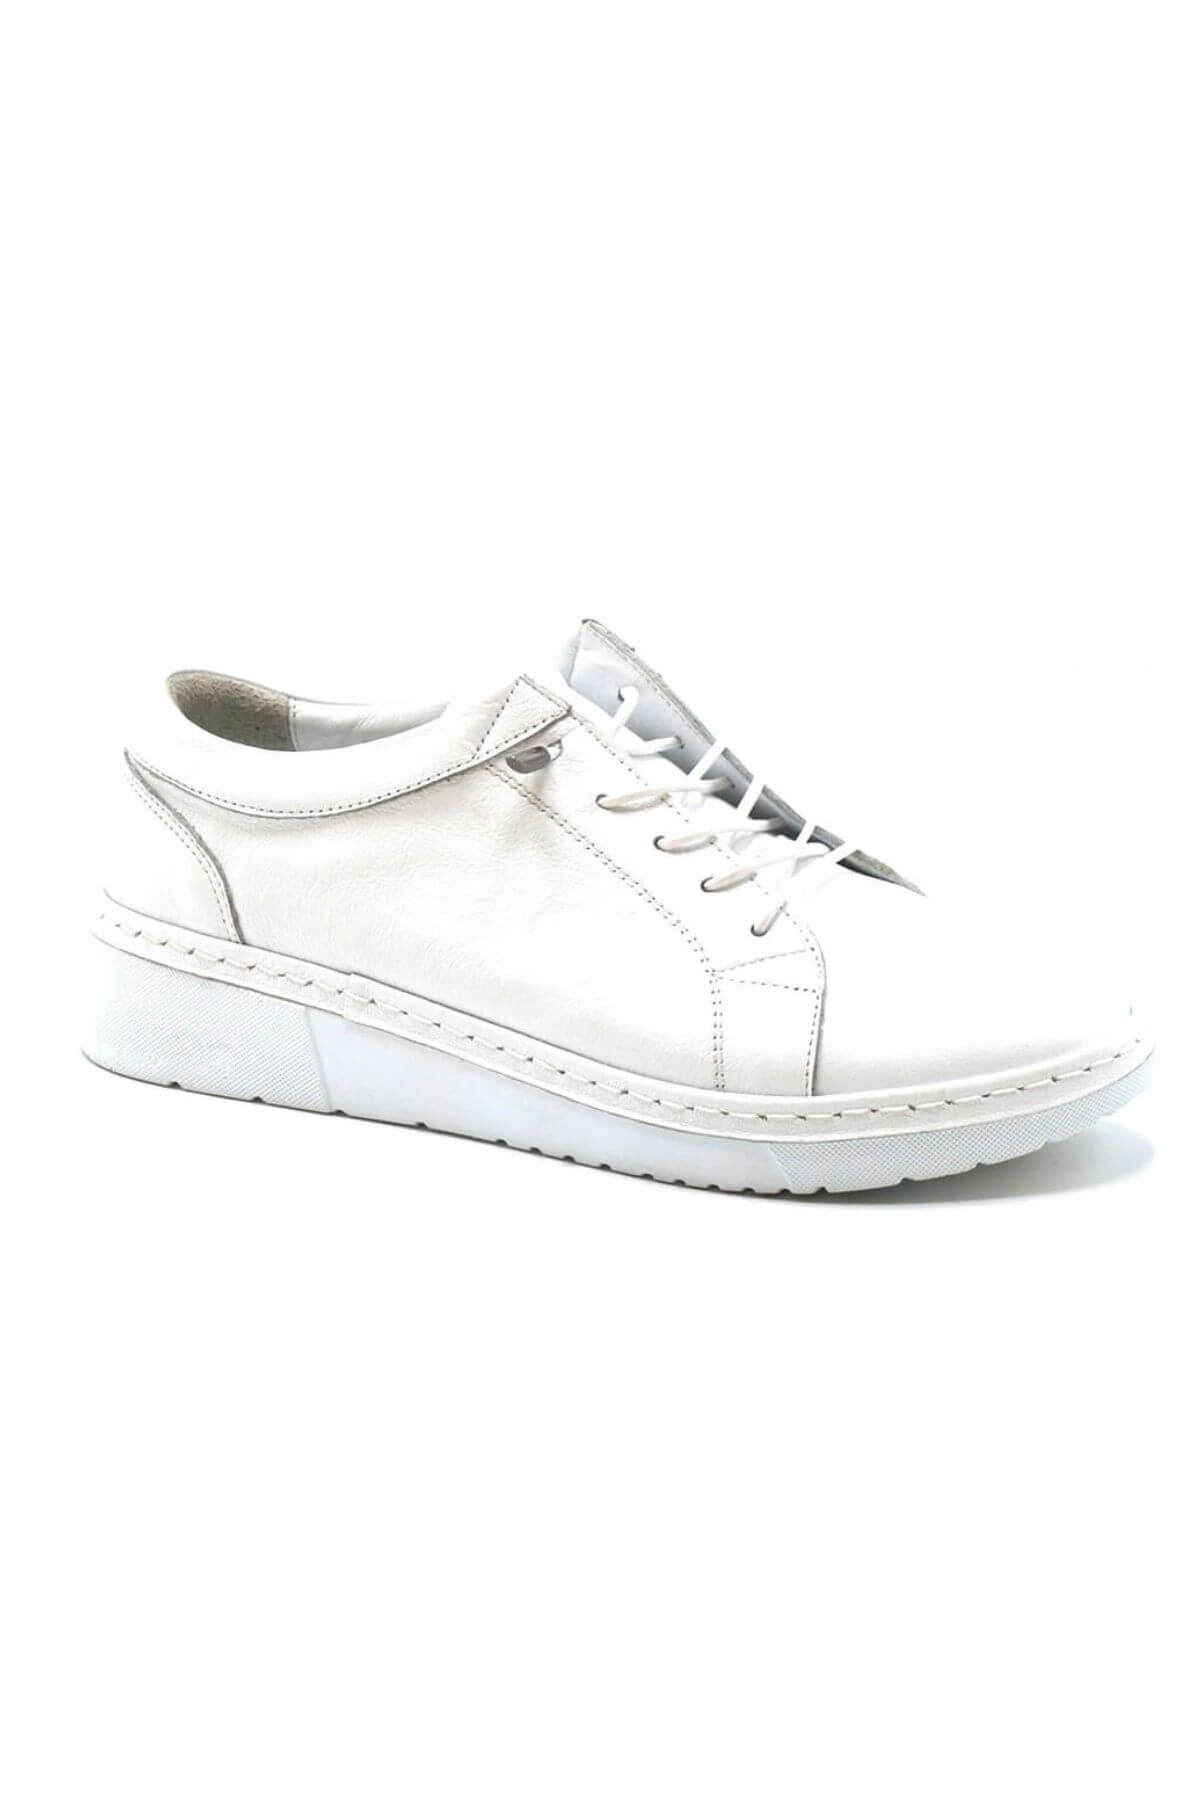 Kadın Comfort Deri Ayakkabı Beyaz 23150003Y